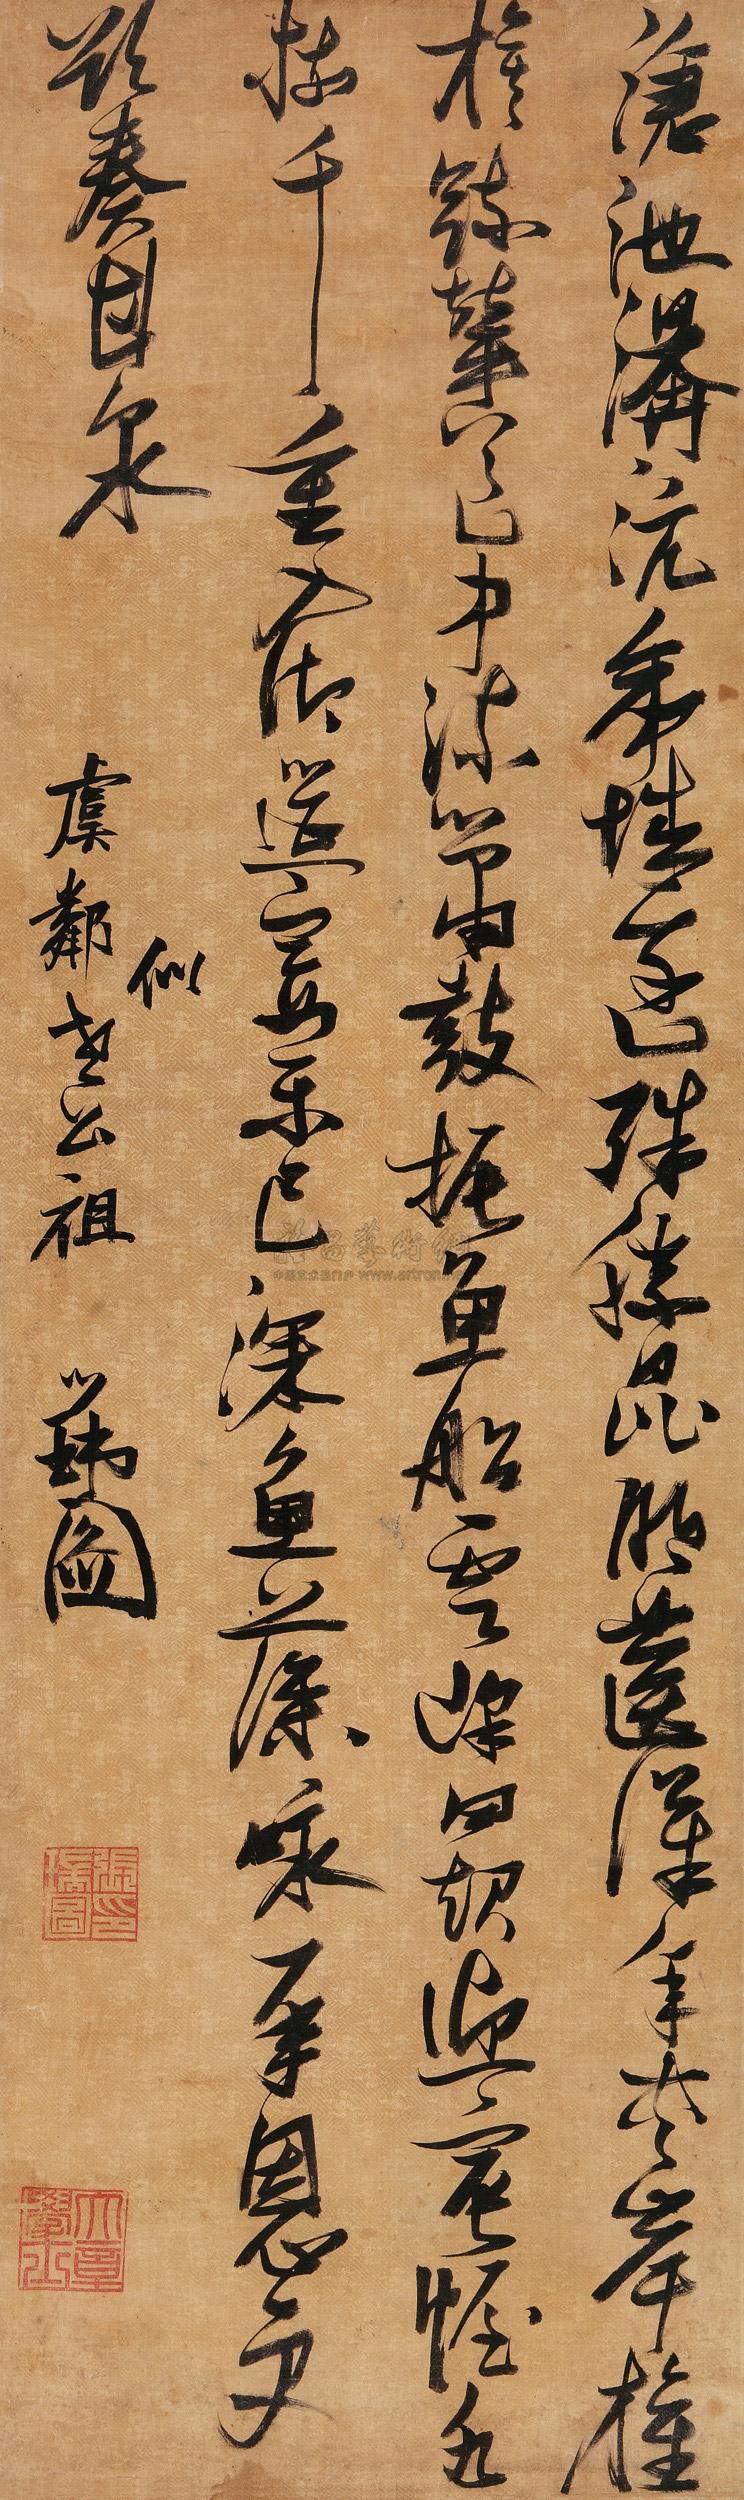 张瑞图《 行书韦元旦诗》轴-绫本 165*56cm 北京工艺美术博物馆庆云堂旧藏(图1)